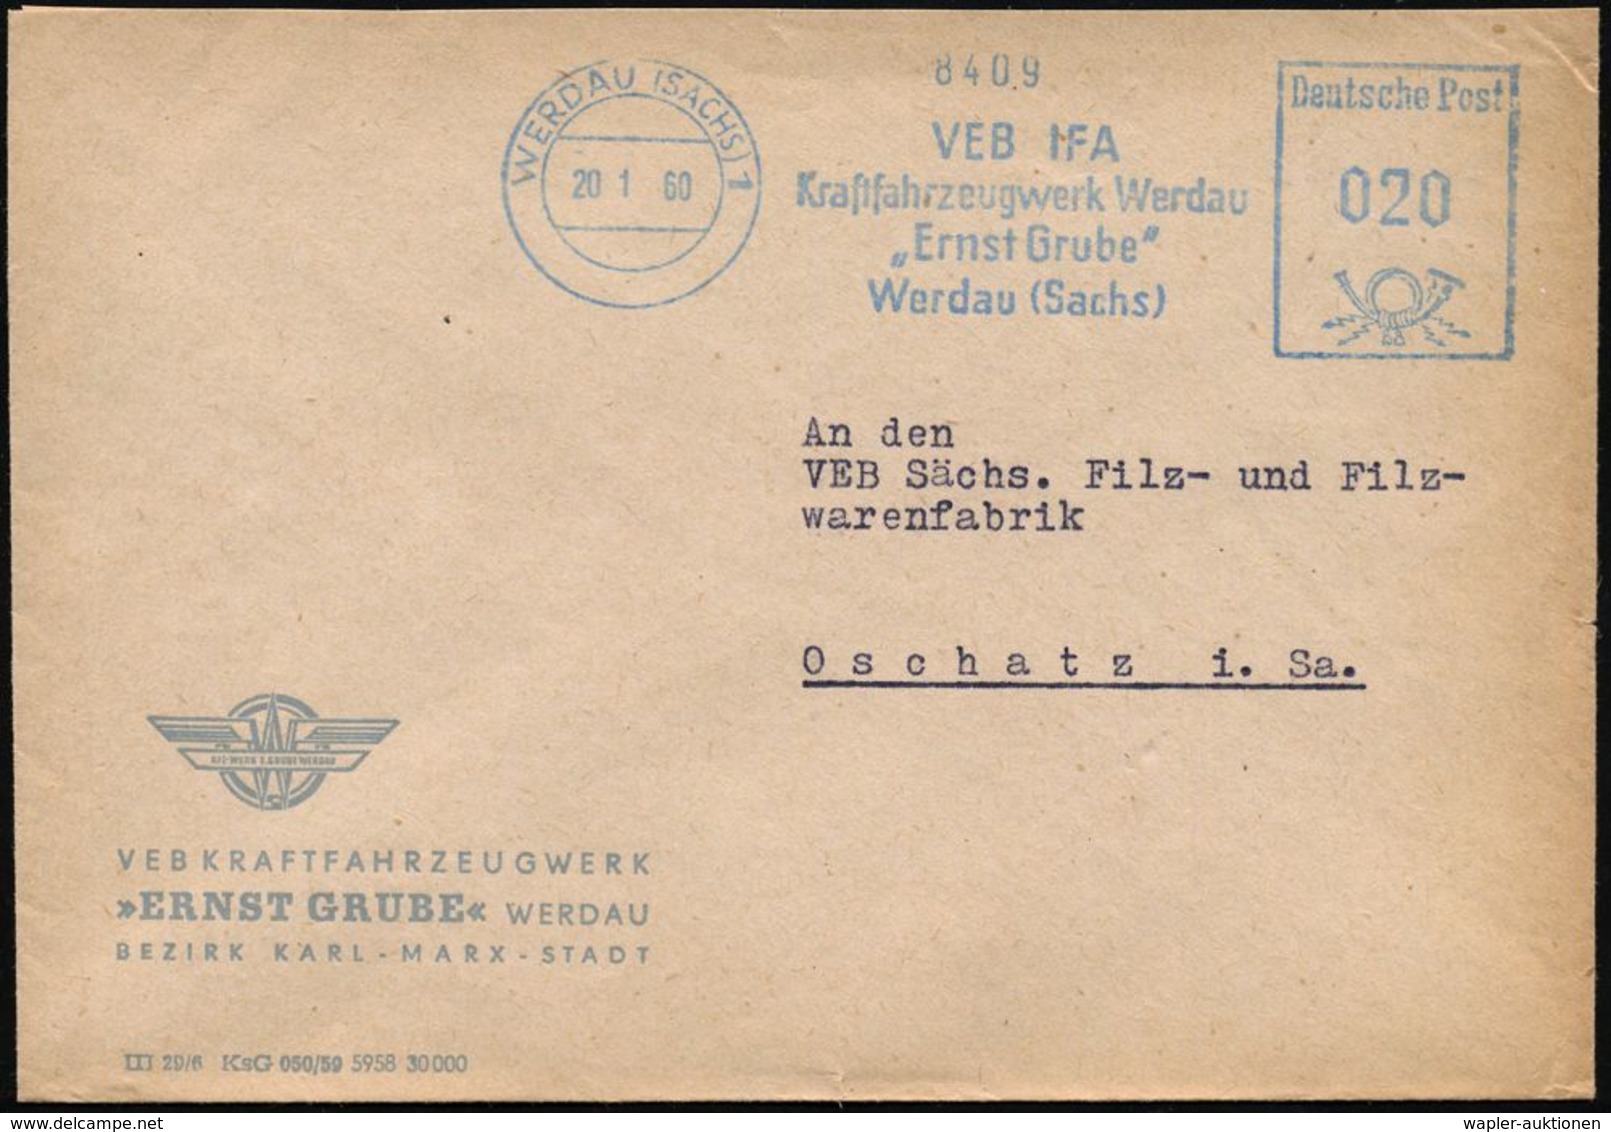 WERDAU (SACHS) 1/ VEB IFA/ Kraftfahrzeugwerk../ "Ernst Grube" 1960 (20.1.) Blauer AFS = Vormals Fa. Schu-mann, Lizenz "V - Auto's